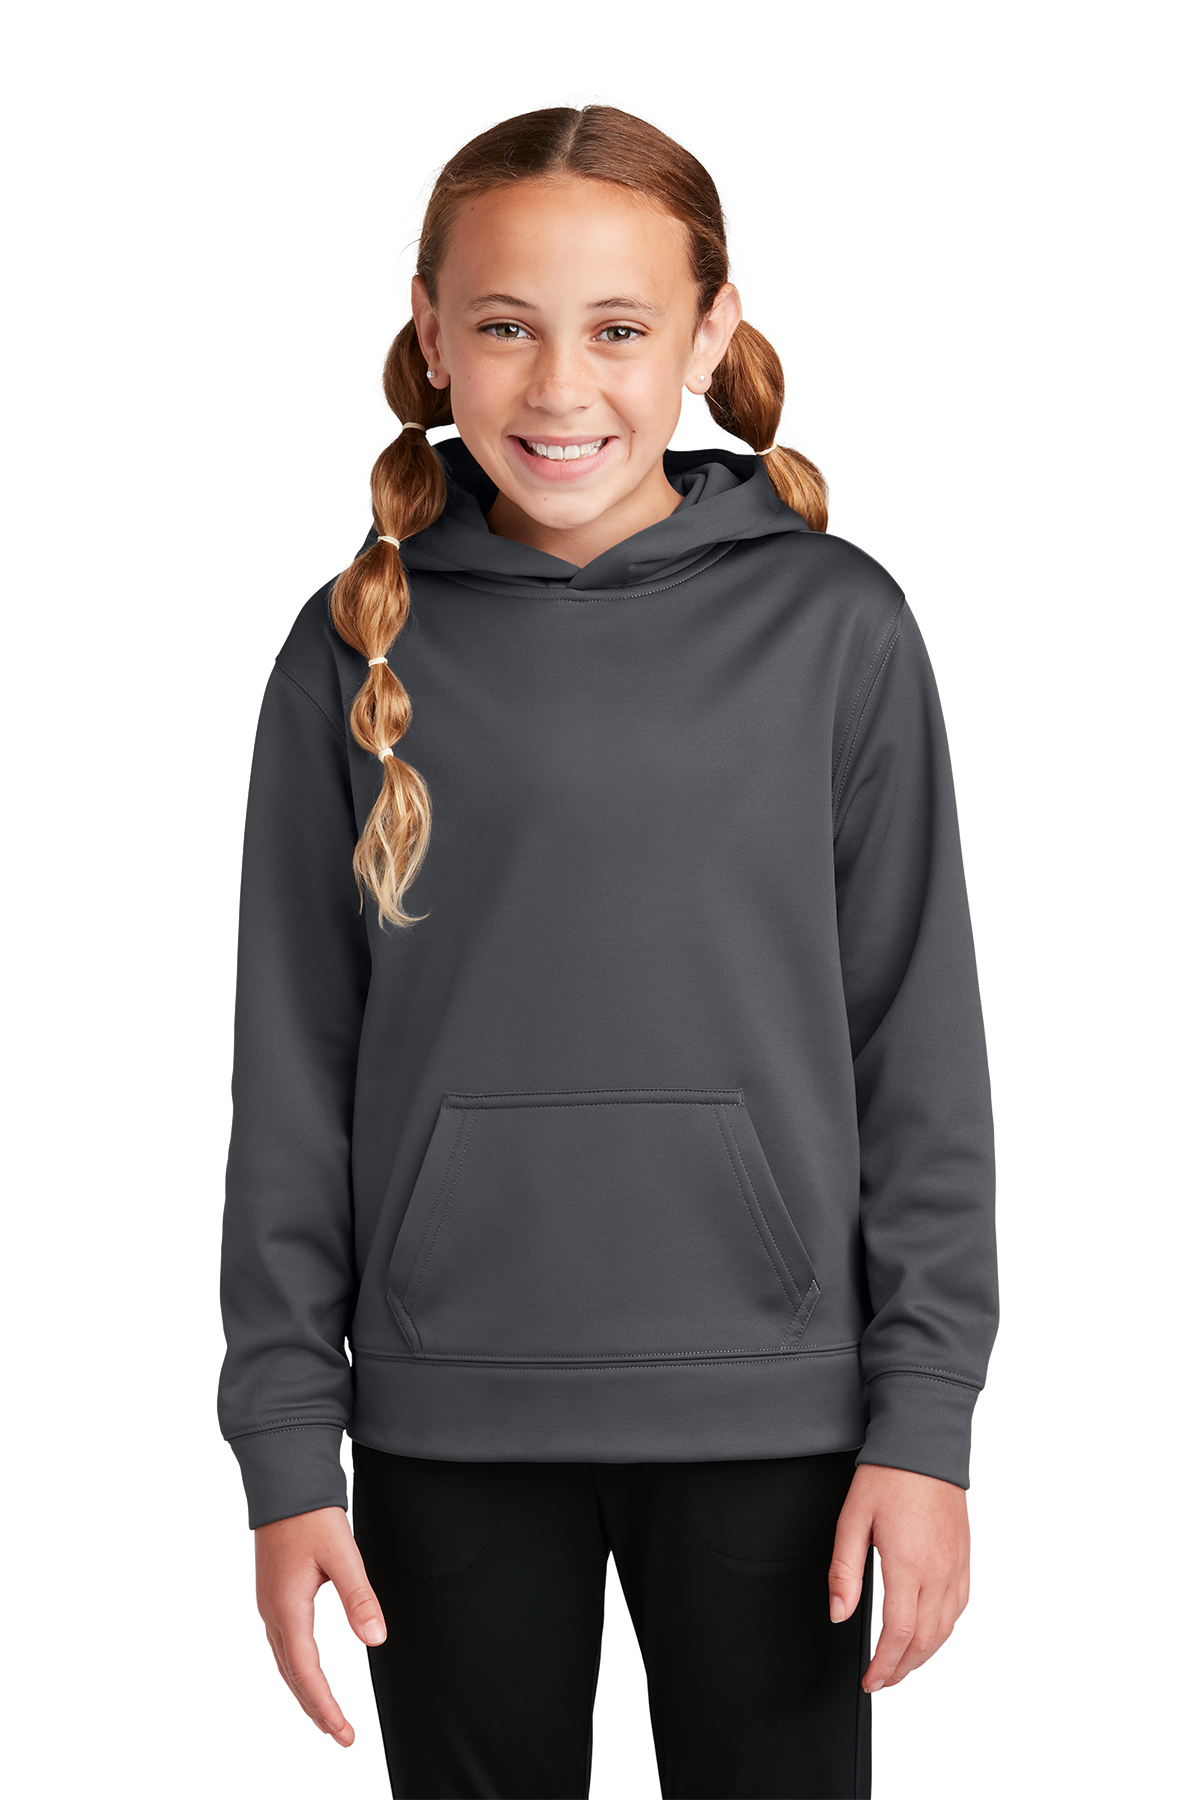 Sport-Tek Youth Sport-Wick Fleece Hooded Pullover | Product | Sport-Tek